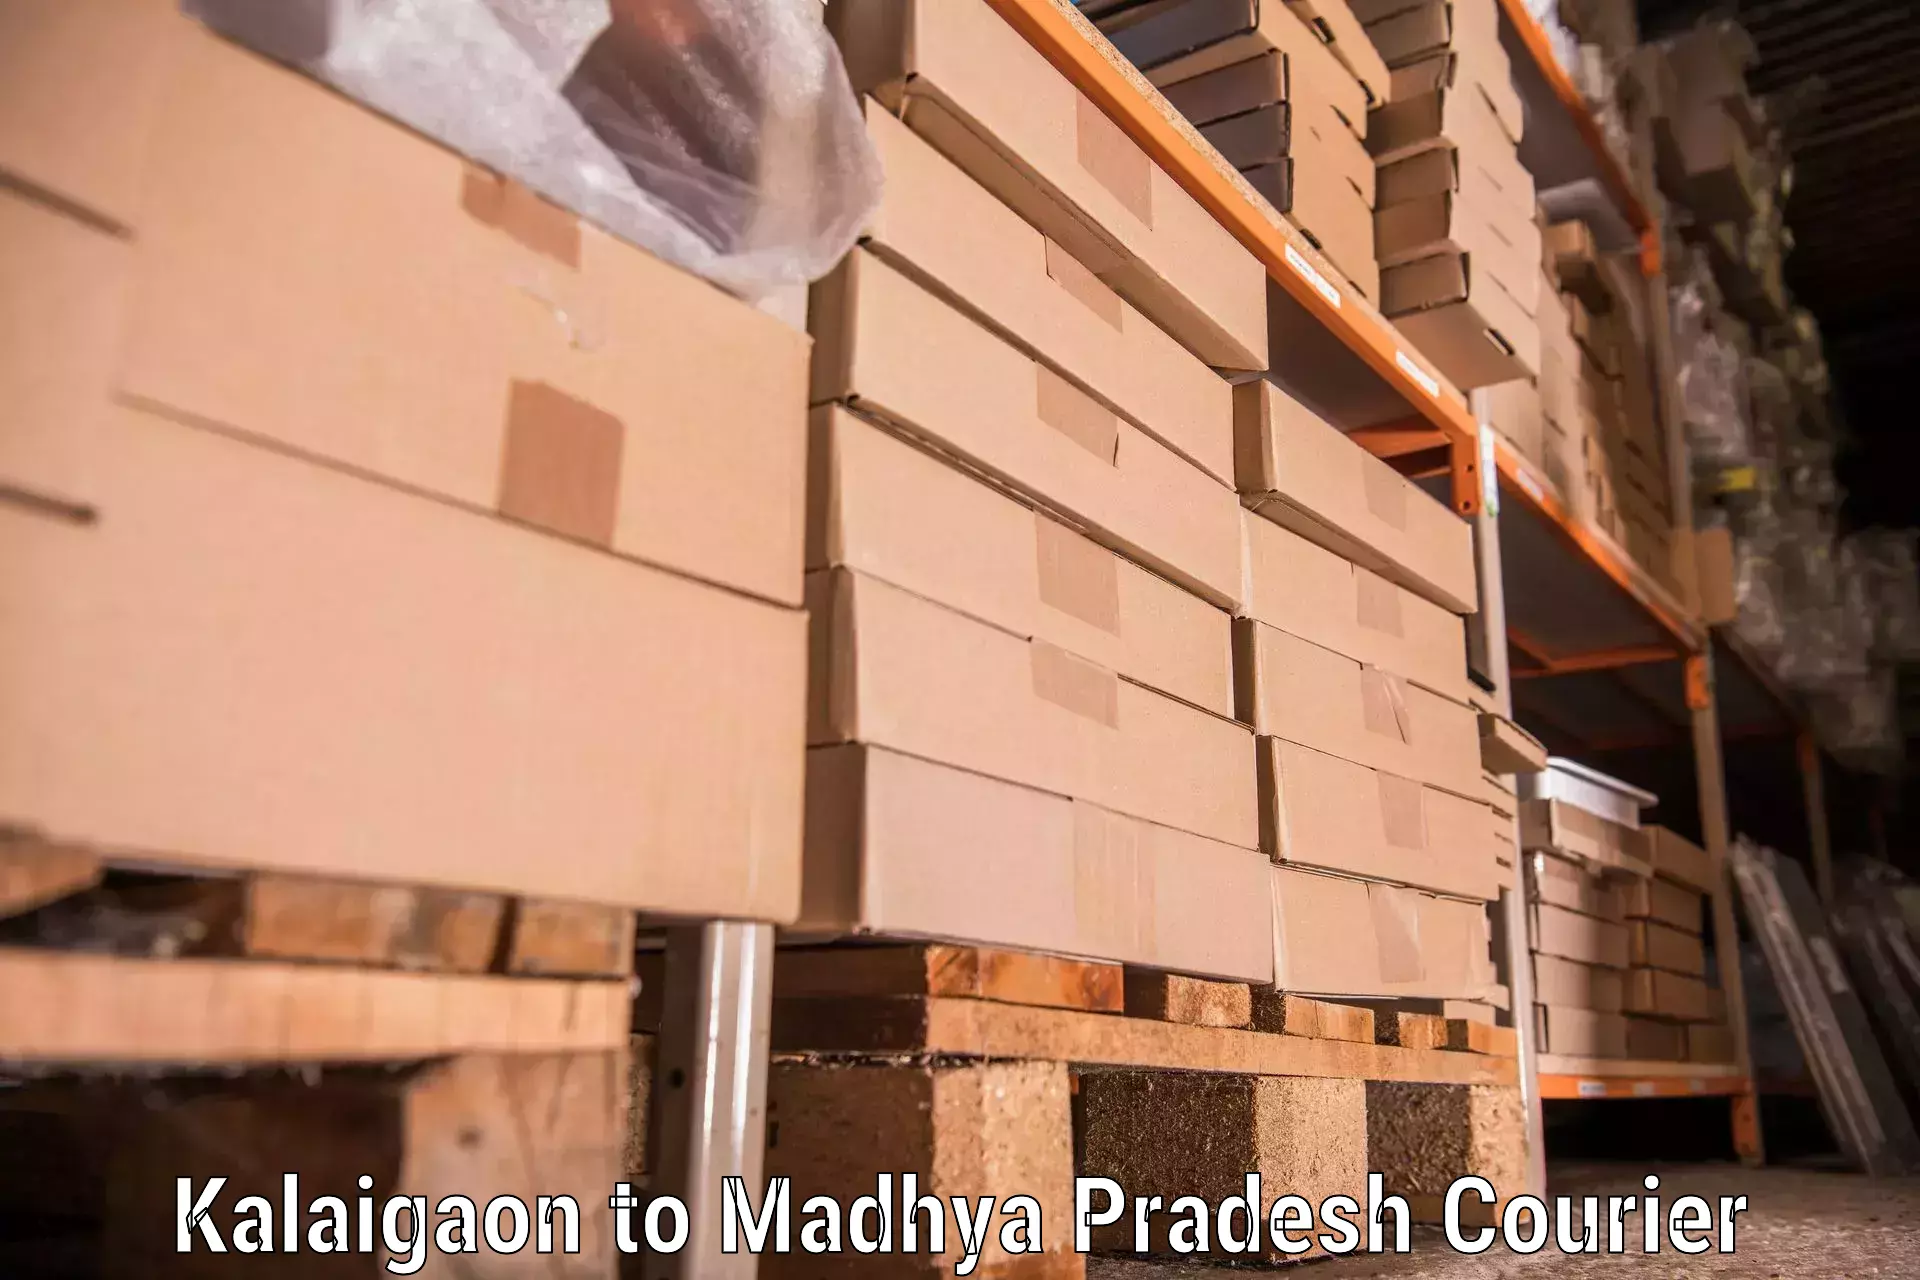 Quality moving company Kalaigaon to Badnagar